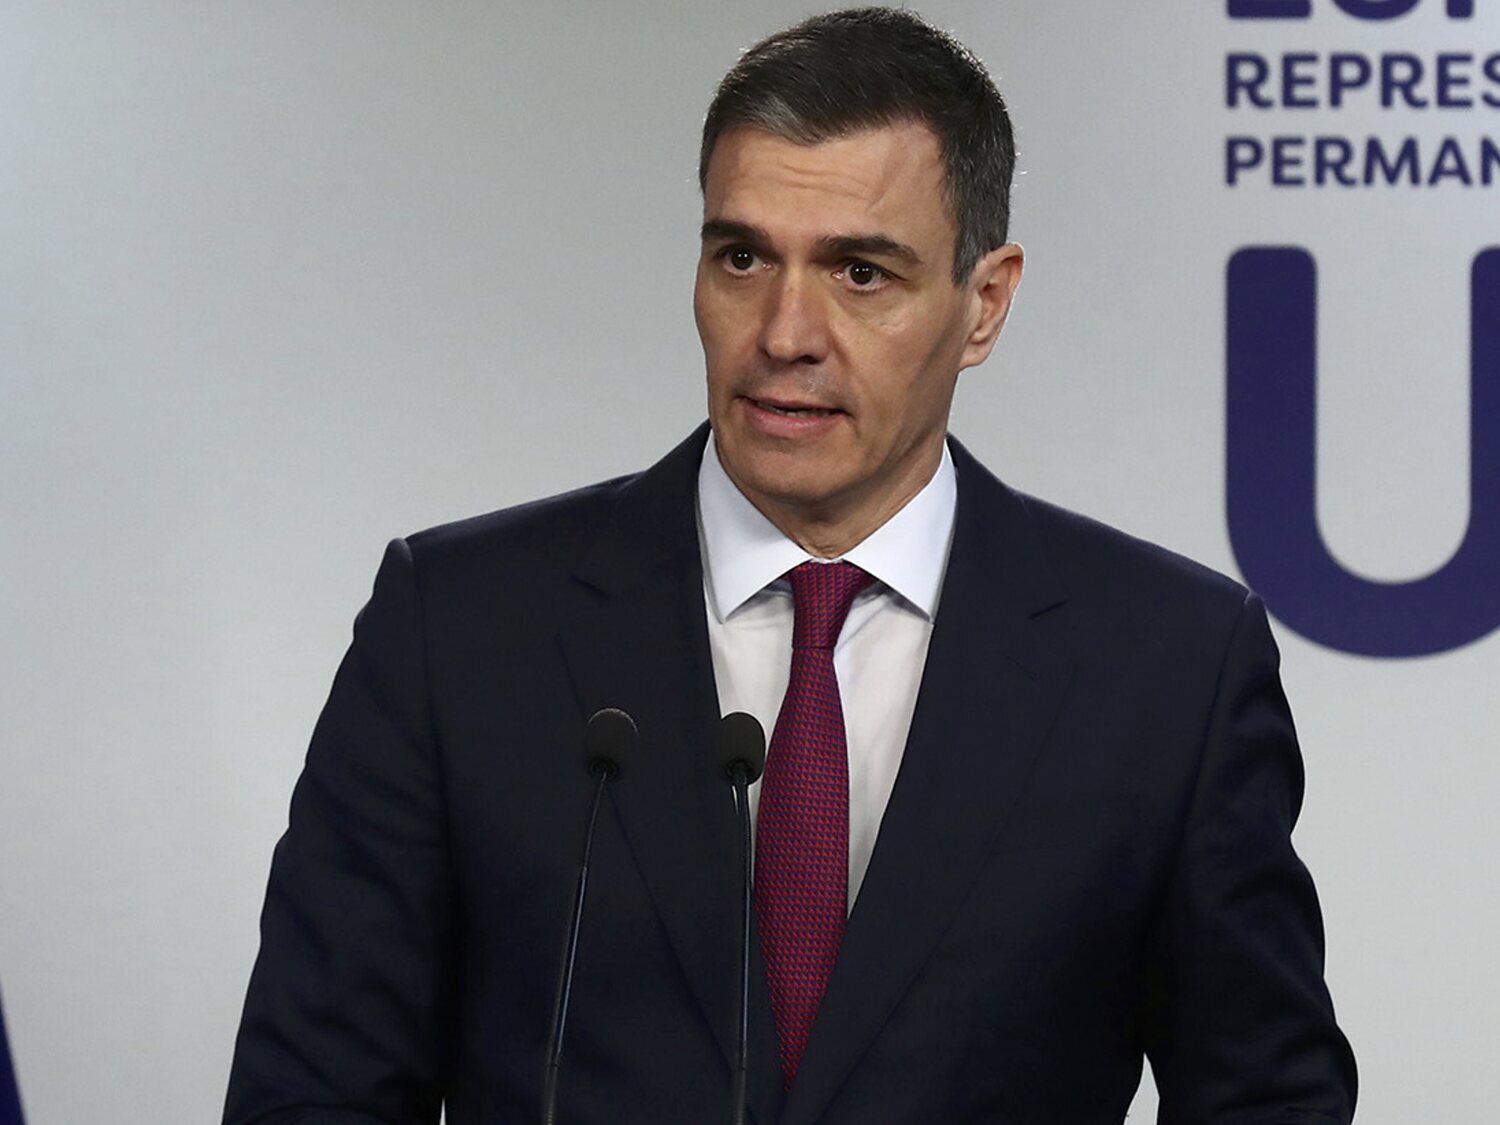 ¿Quién podría suceder a Pedro Sánchez en el Gobierno y el PSOE? Los nombres con más posibilidades